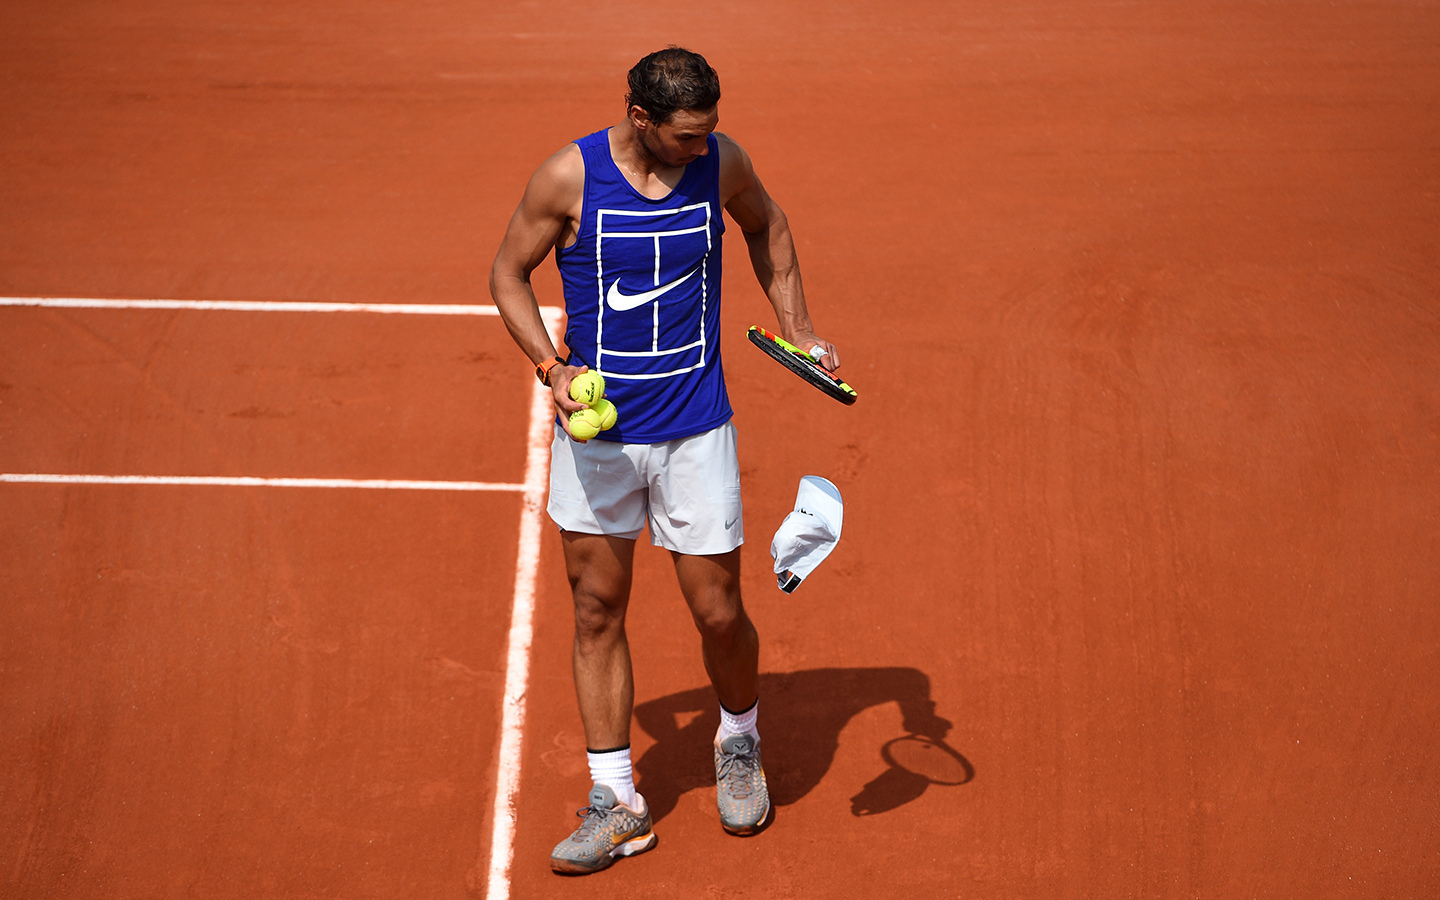 Nadal returns to Roland-Garros - Roland-Garros - The 2020 Roland-Garros Tournament ...